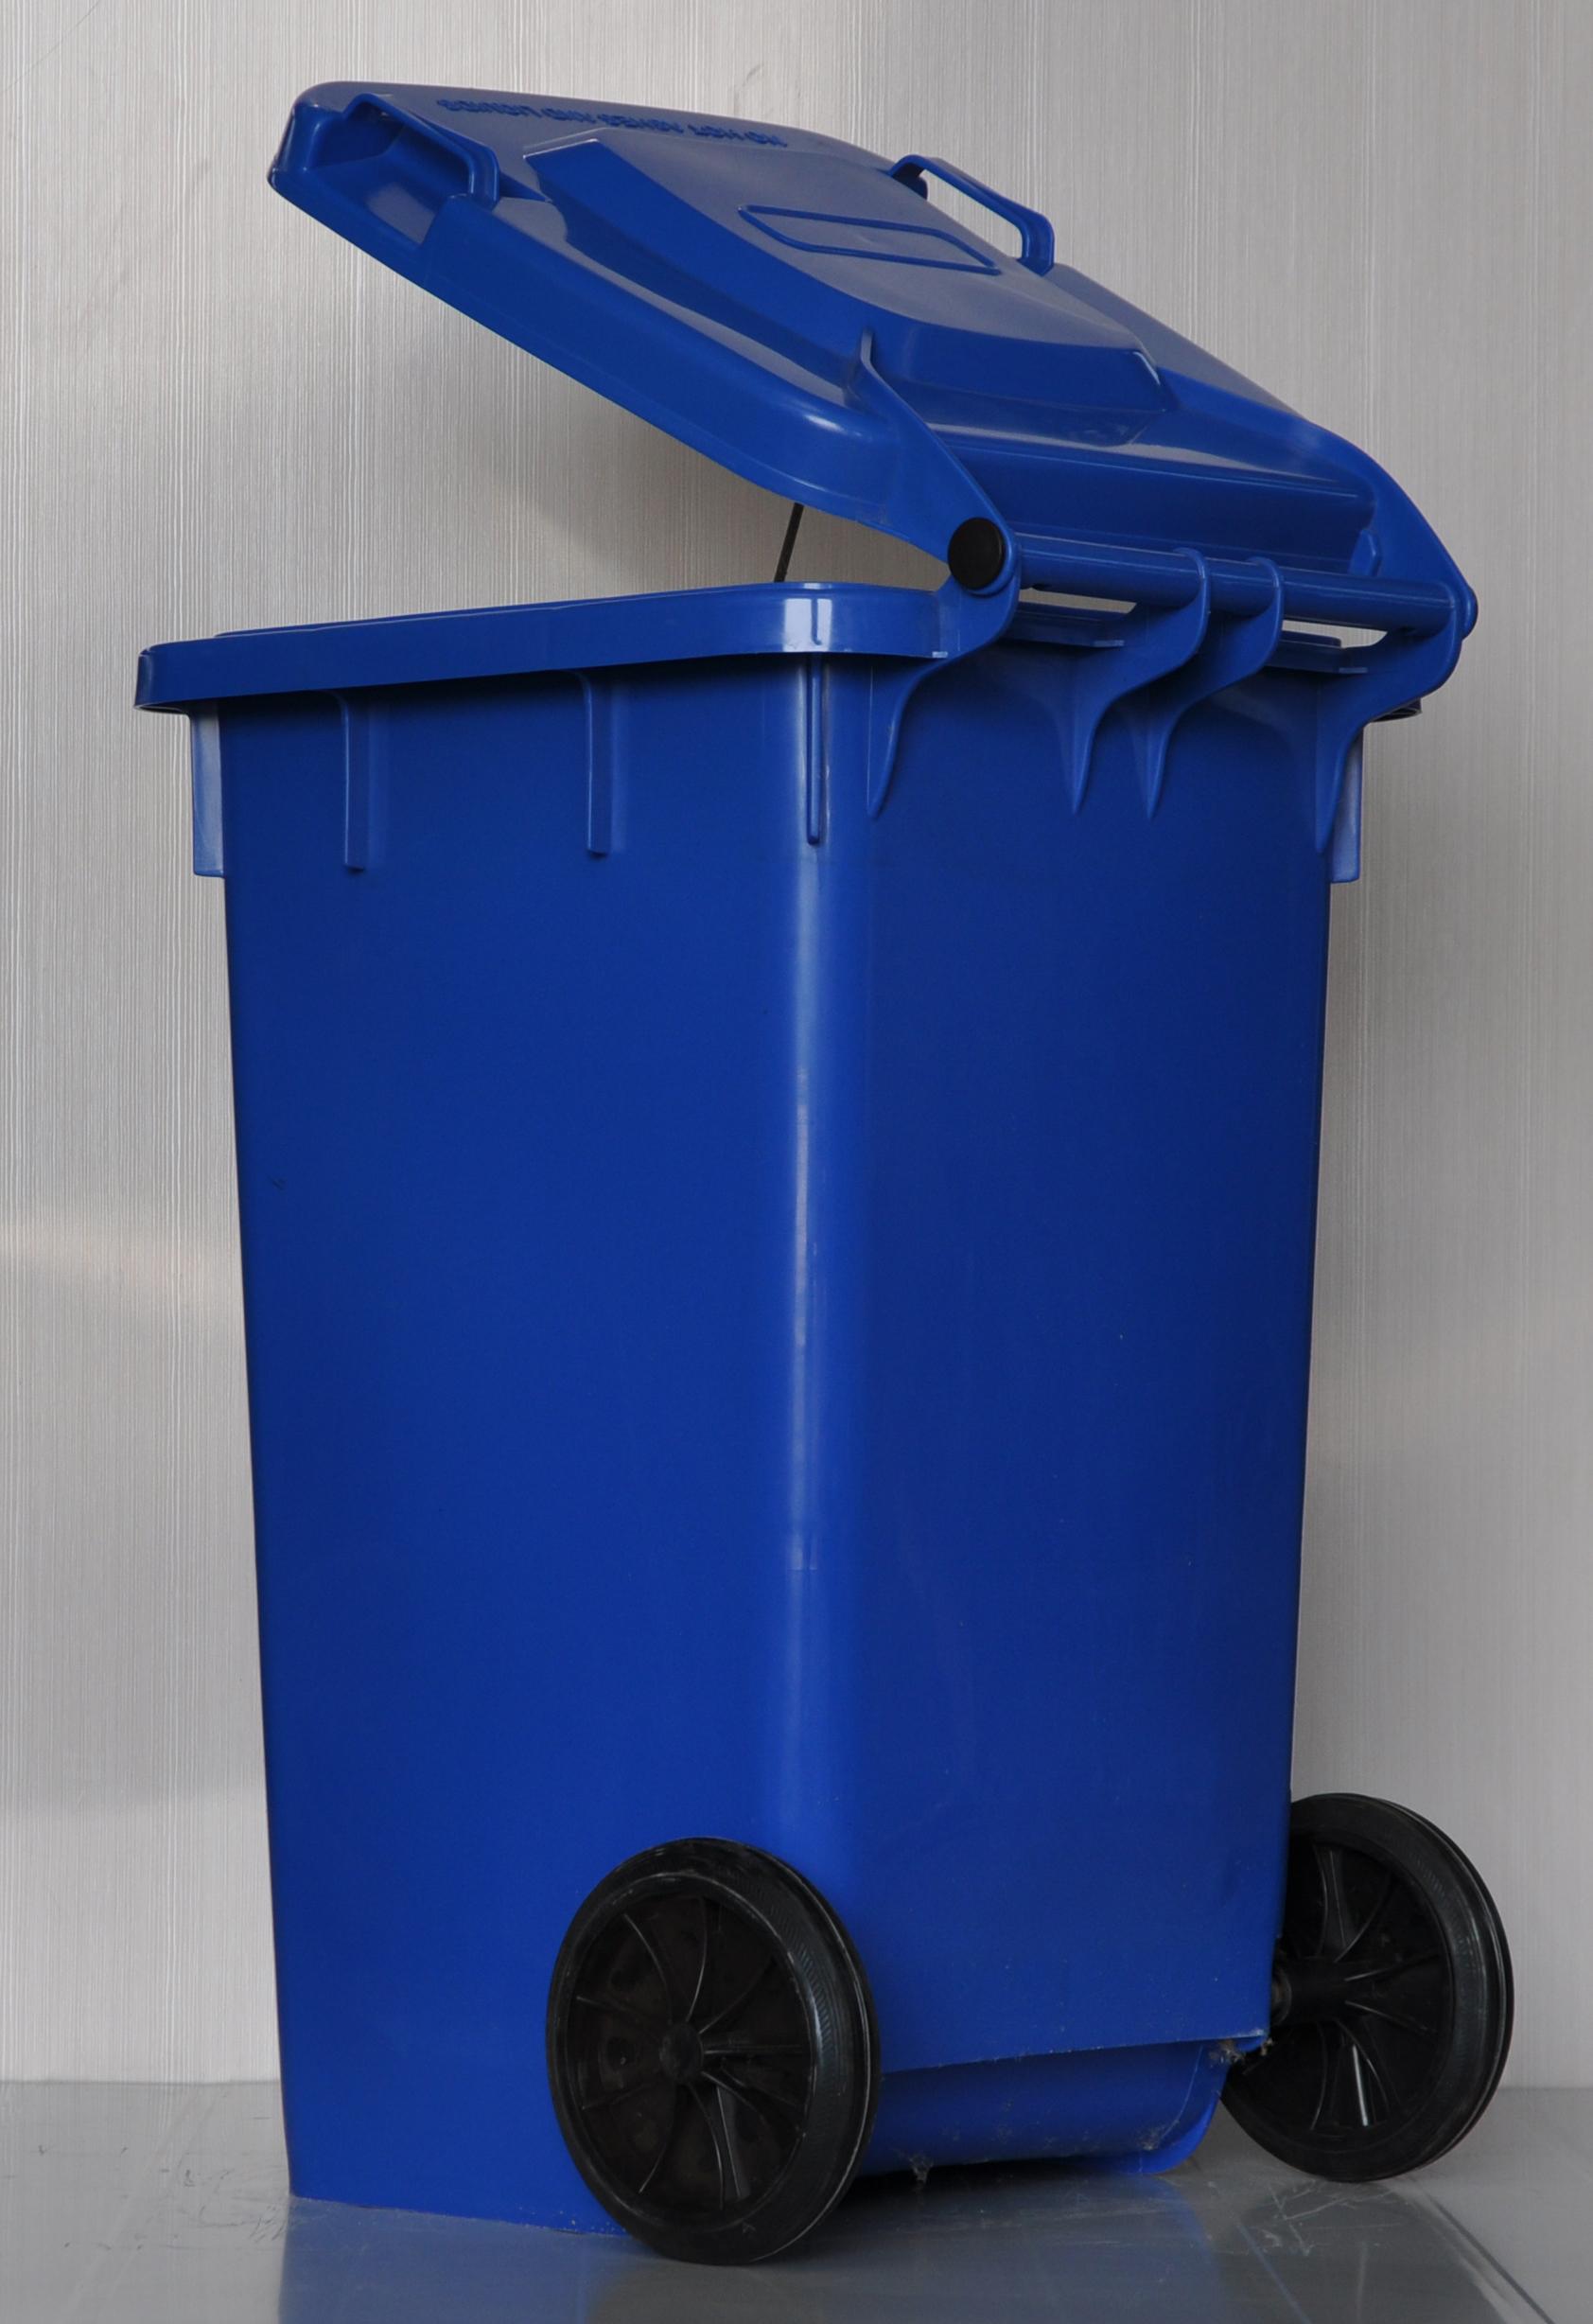 湖北襄樊100L塑料垃圾桶室外垃圾桶环卫垃圾桶小区垃圾桶厂家平价直销